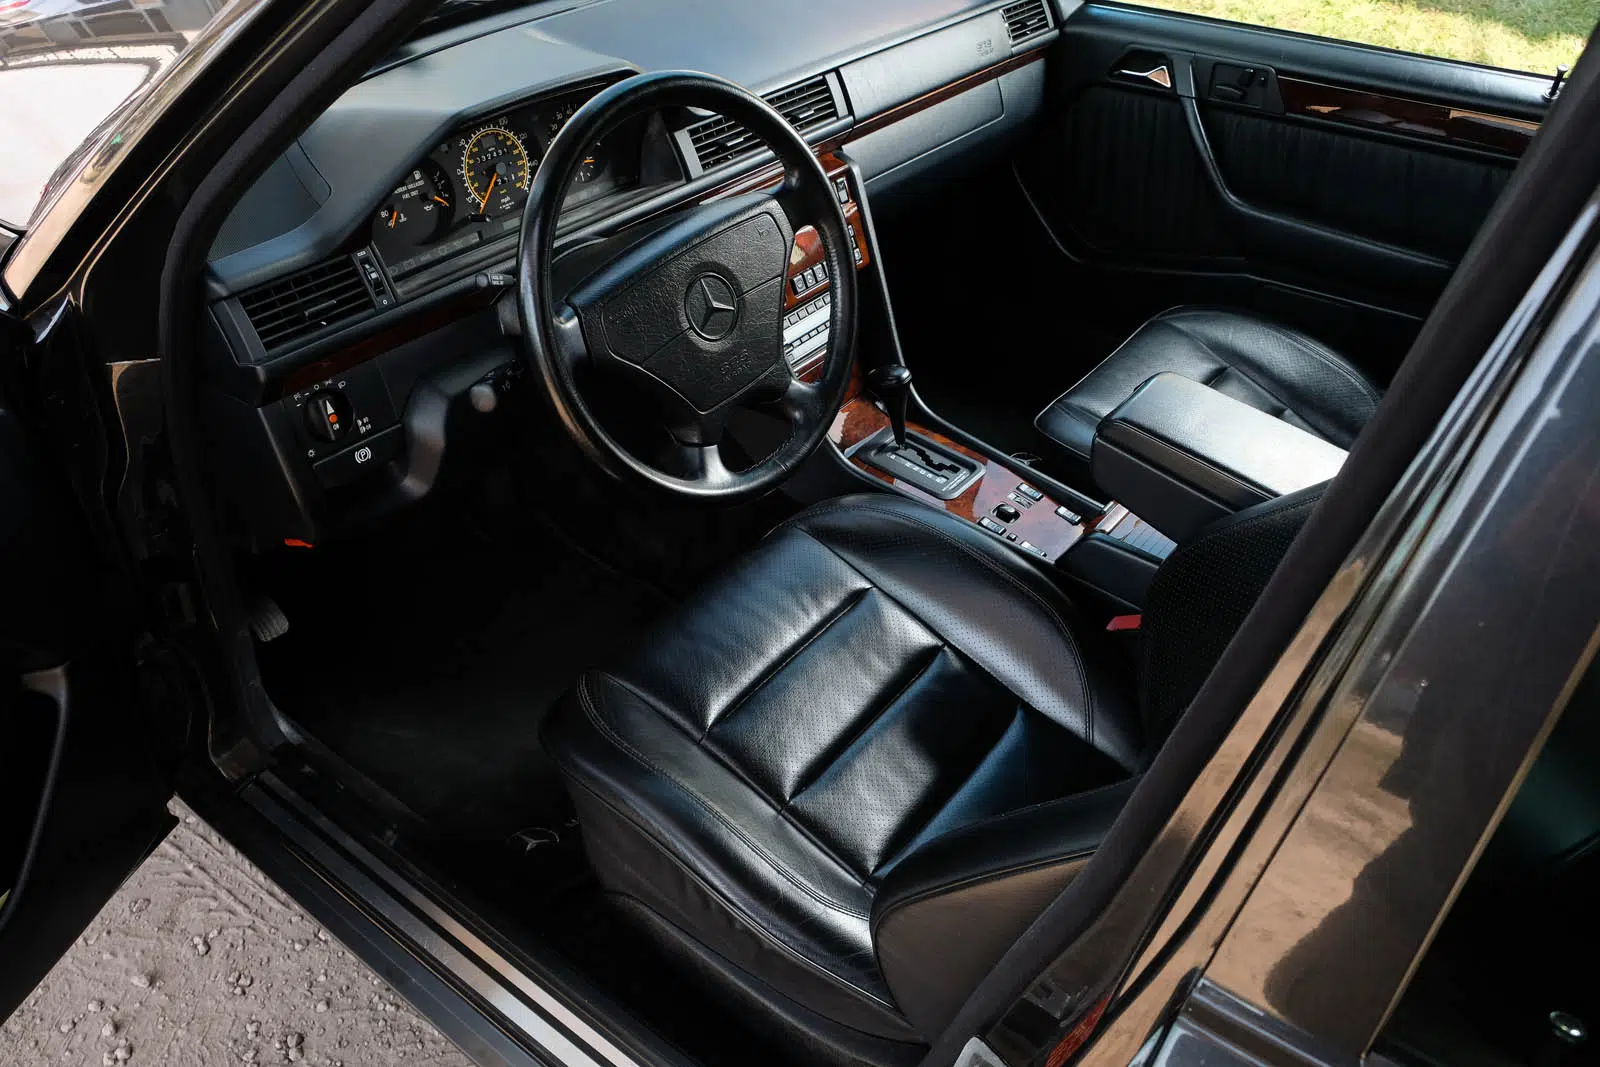 Mercedes-Benz 500E interior